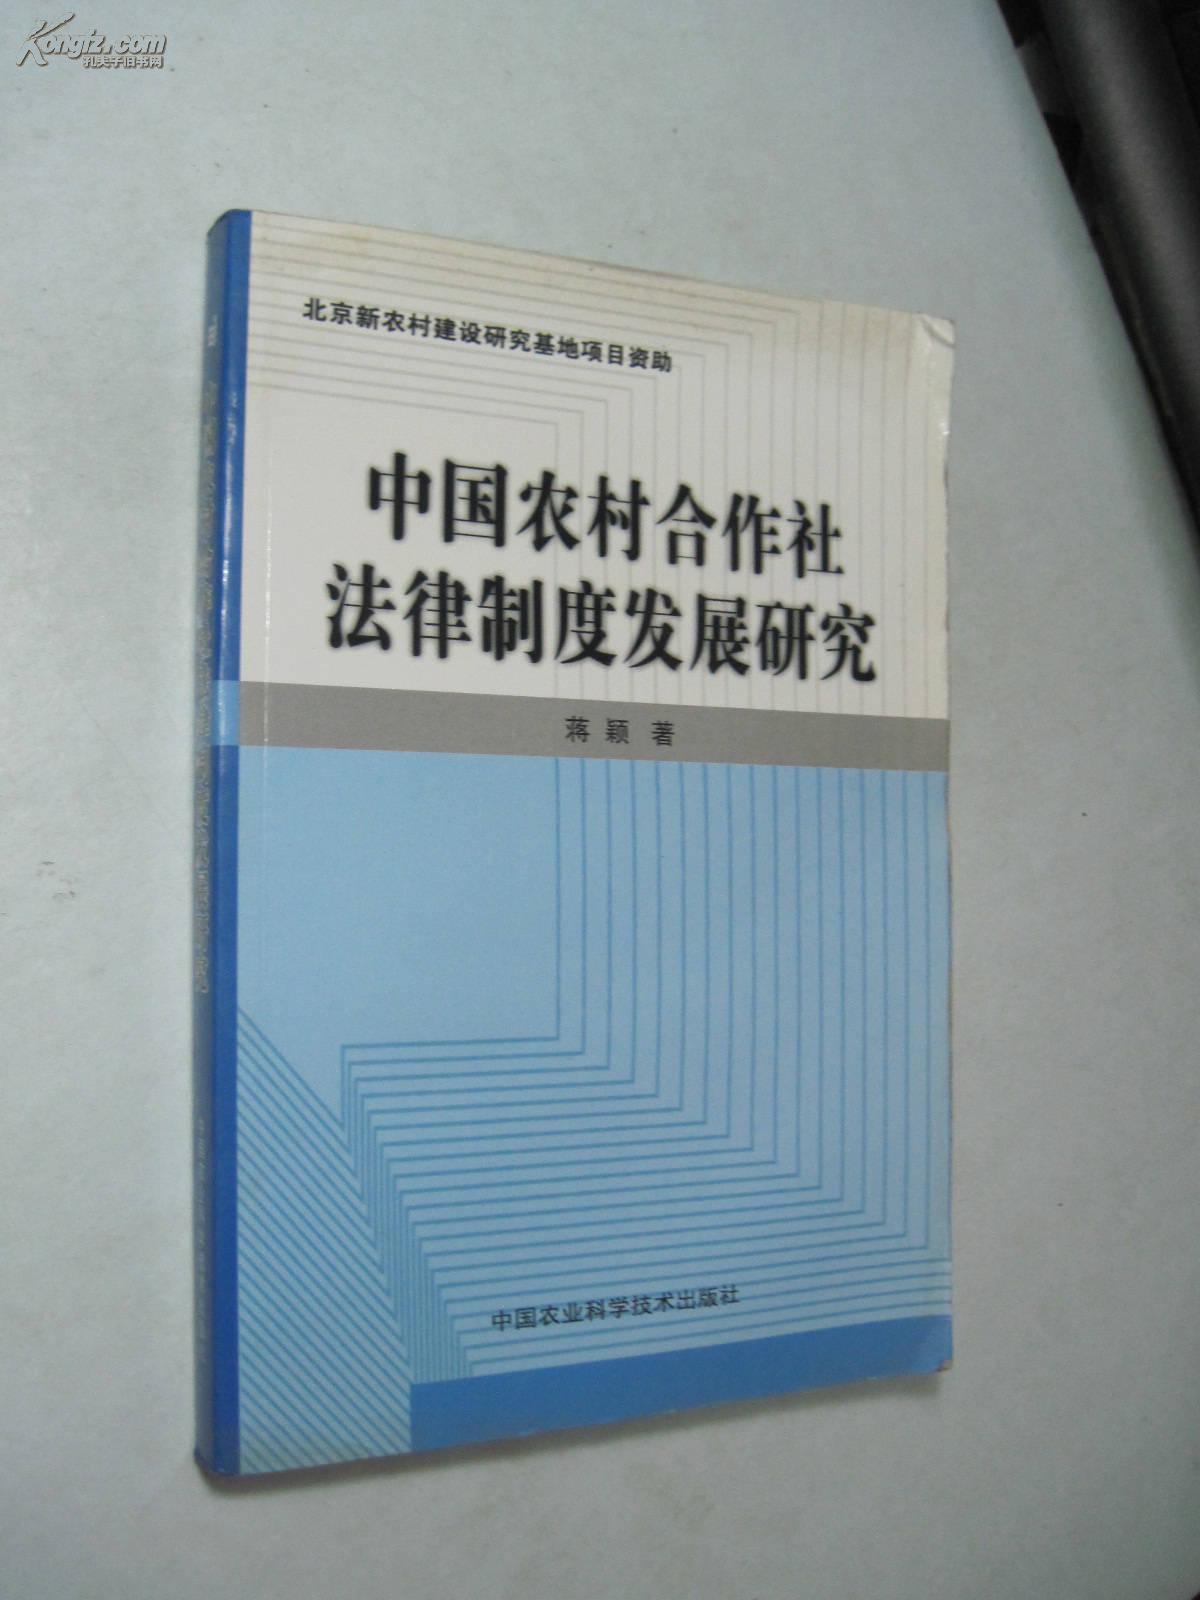 中国农村合作社法律制度发展研究 